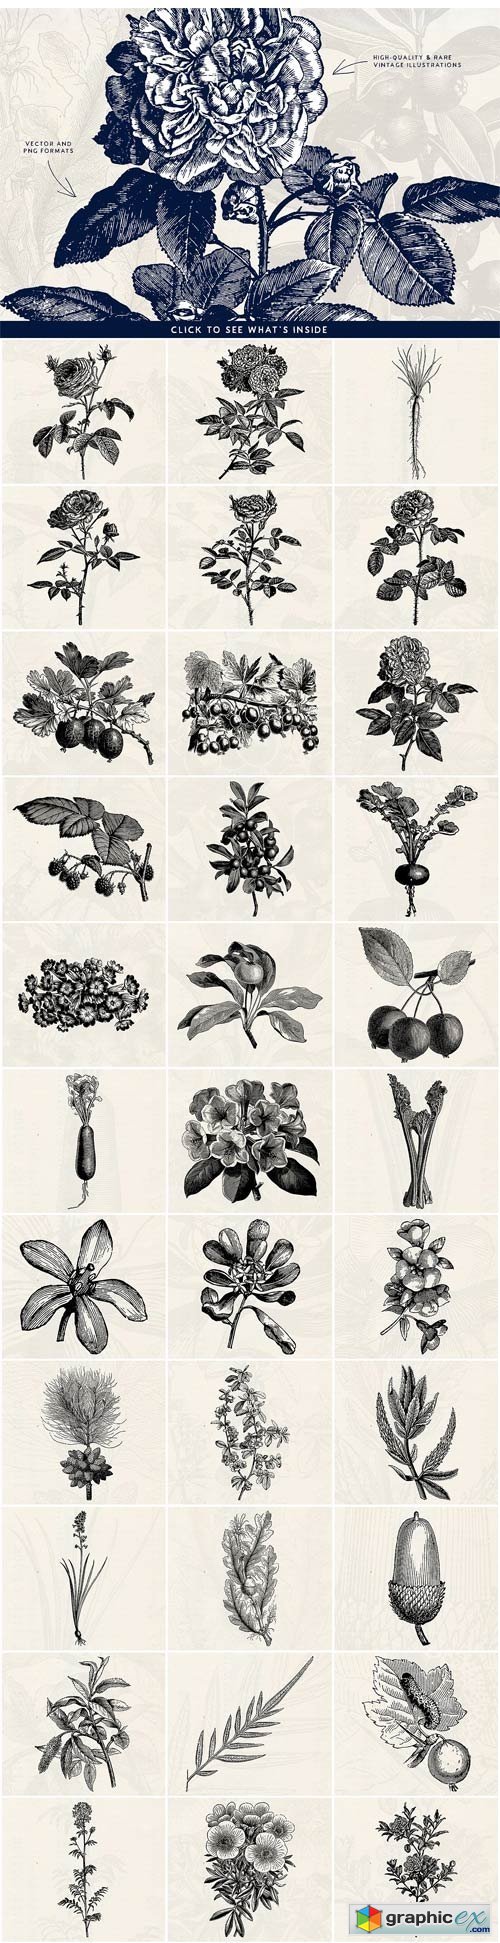 63 Fruit & Flower Illustrations